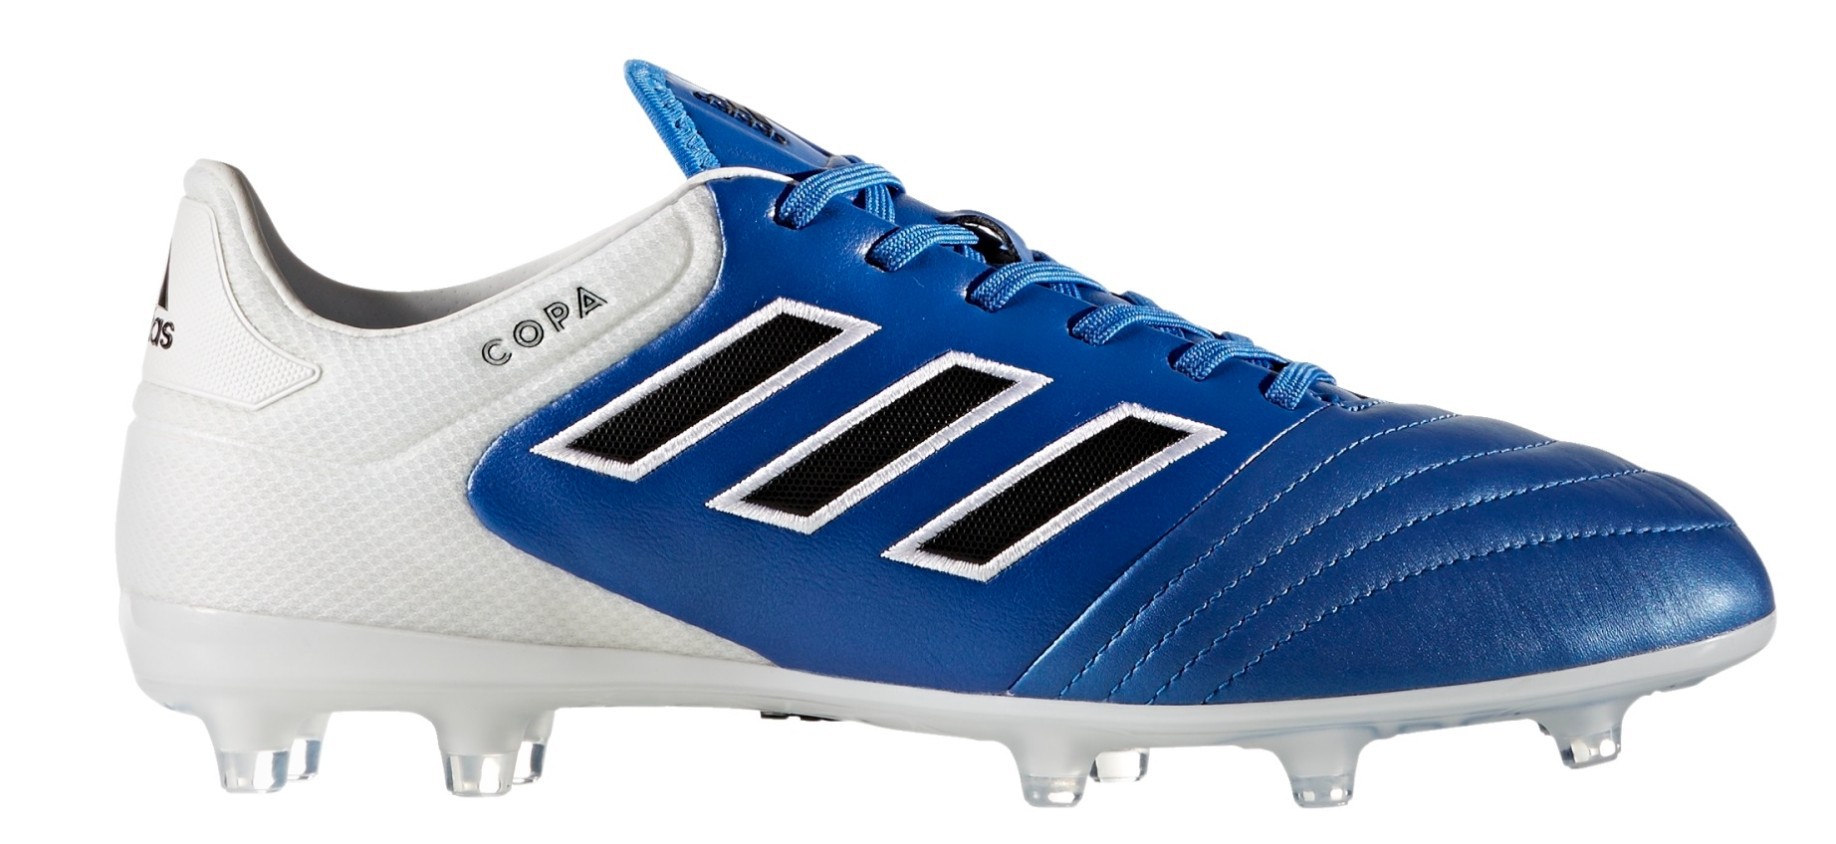 Botas De Fútbol Adidas 17.2 Azul Explosión Pack colore azul blanco - - SportIT.com